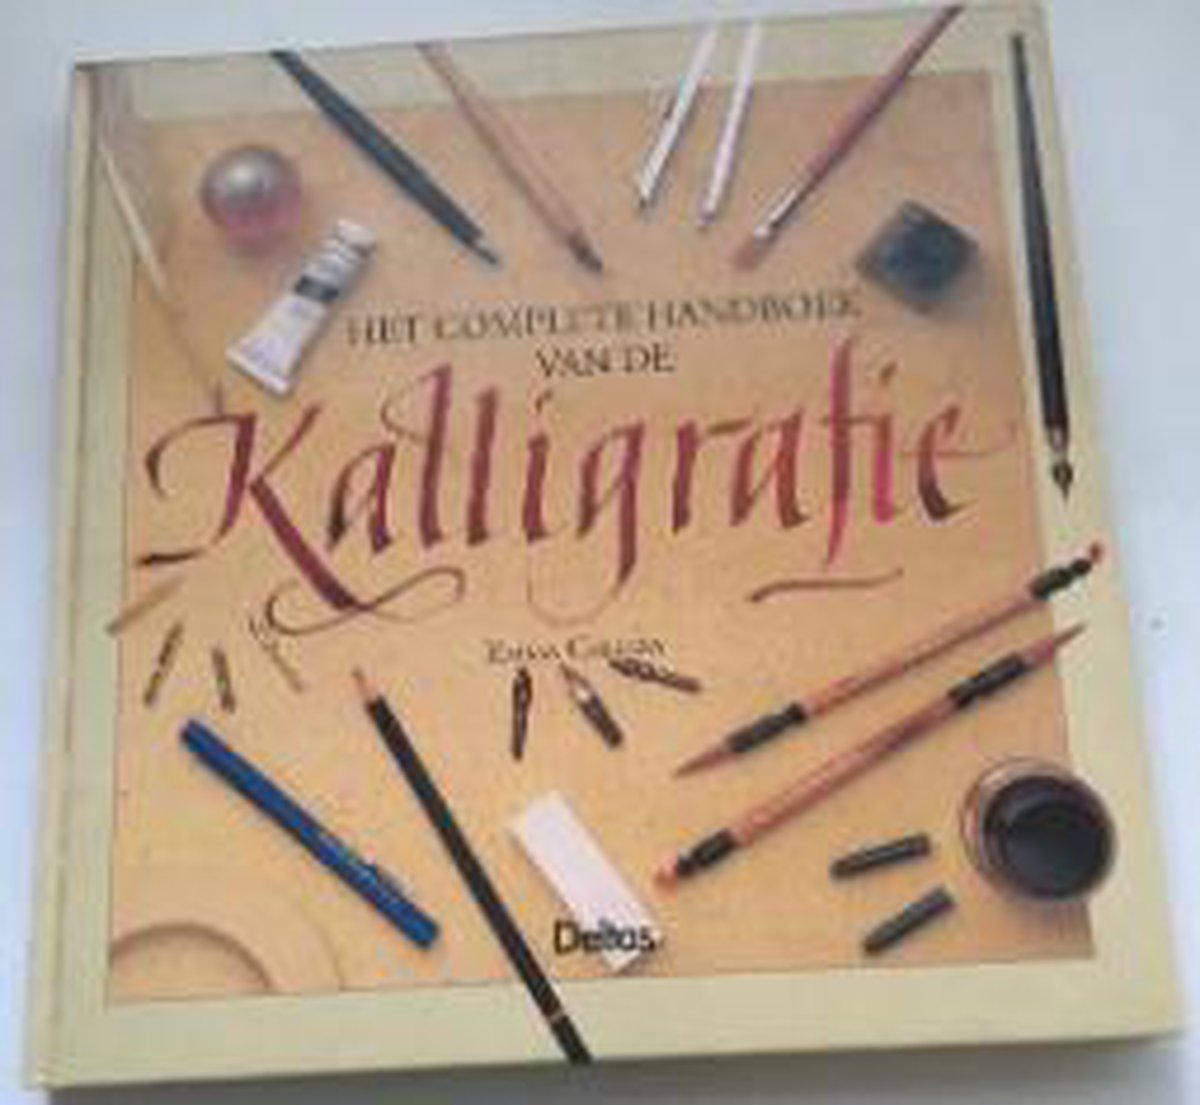 Het complete handboek van de kalligrafie